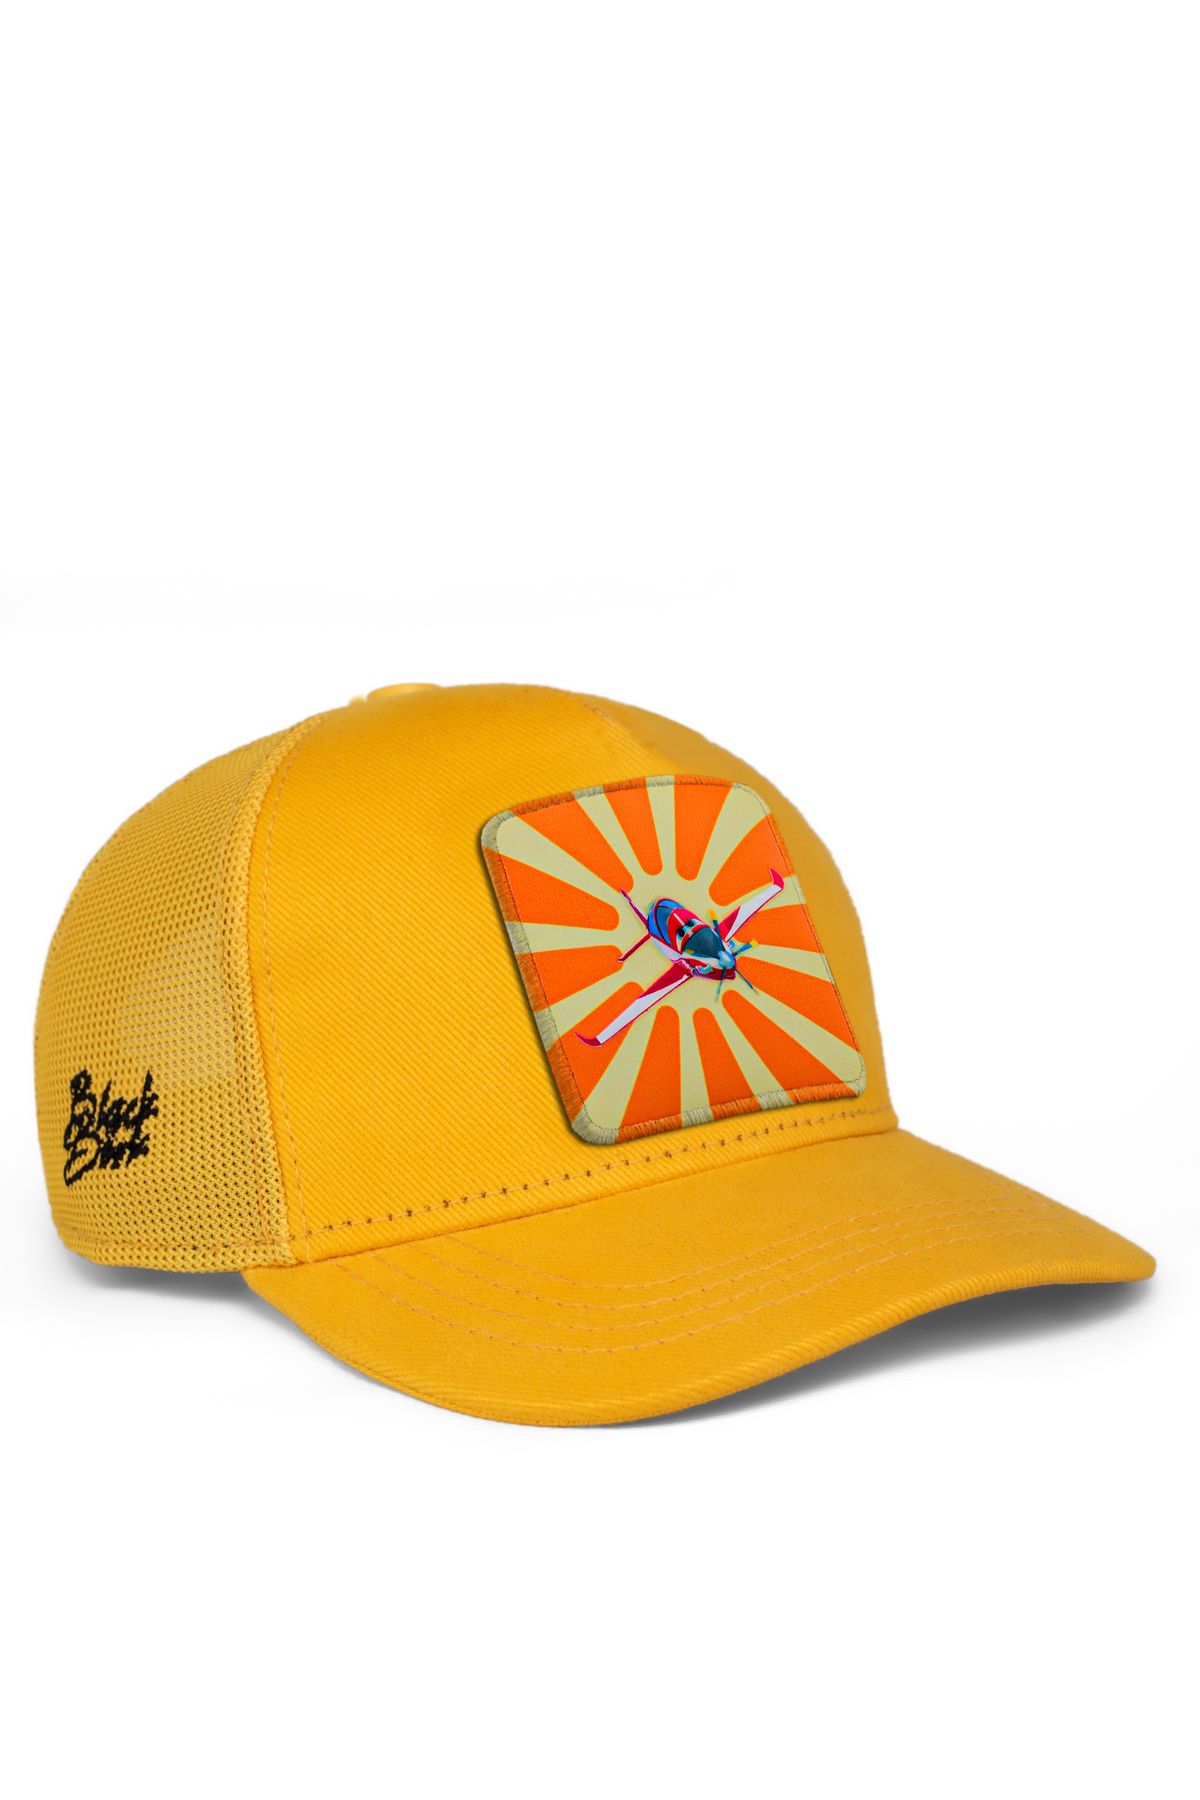 BlackBörk V1 Trucker Güneş Hürkuş Lisanlı Sarı Çocuk Şapka